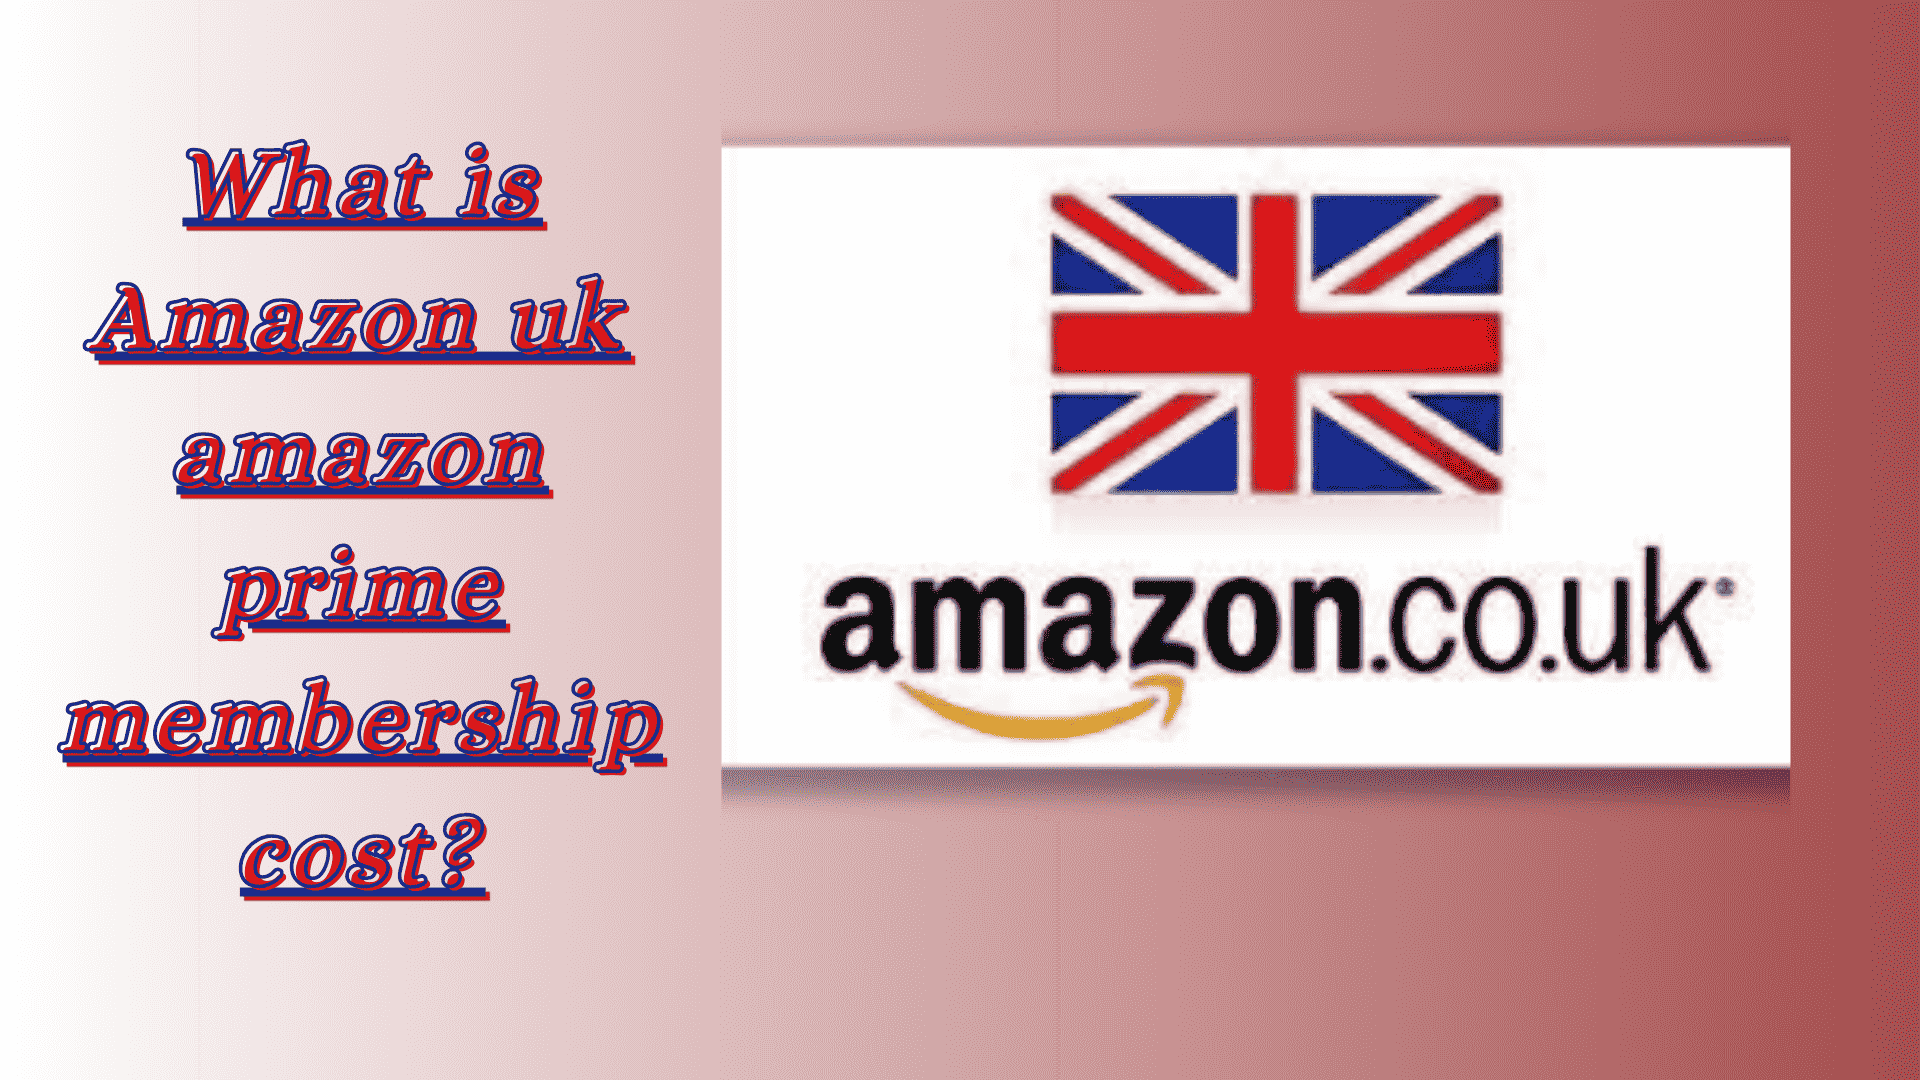 What is Amazon uk amazon prime membership cost?